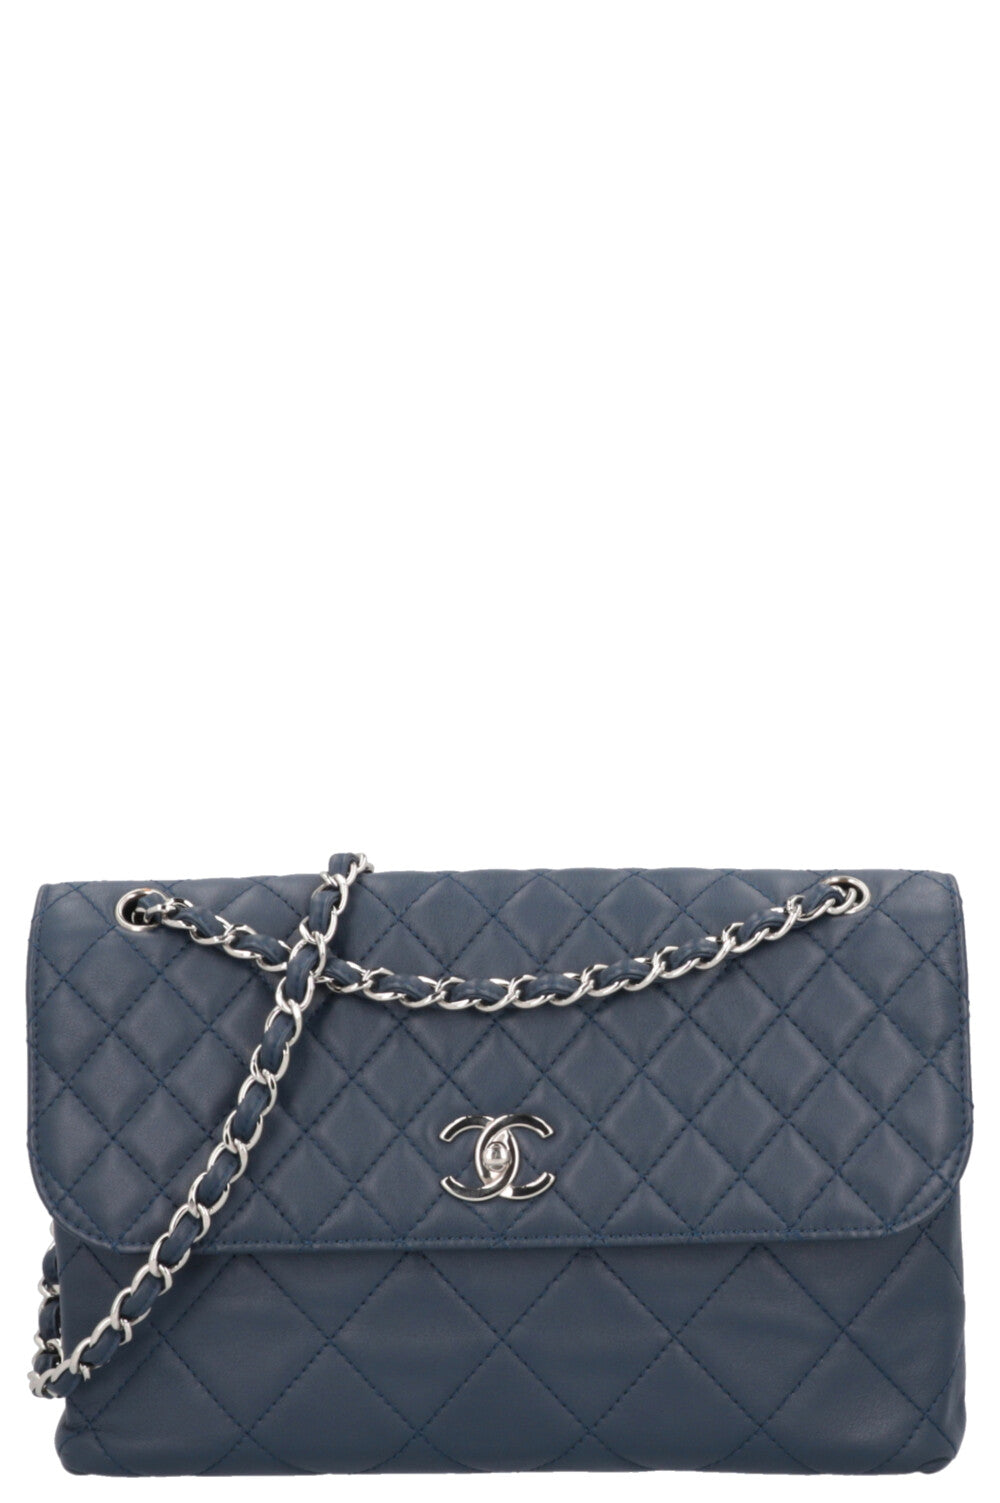 Chanel In The Business Bag Blau Lammleder Silber Hardware